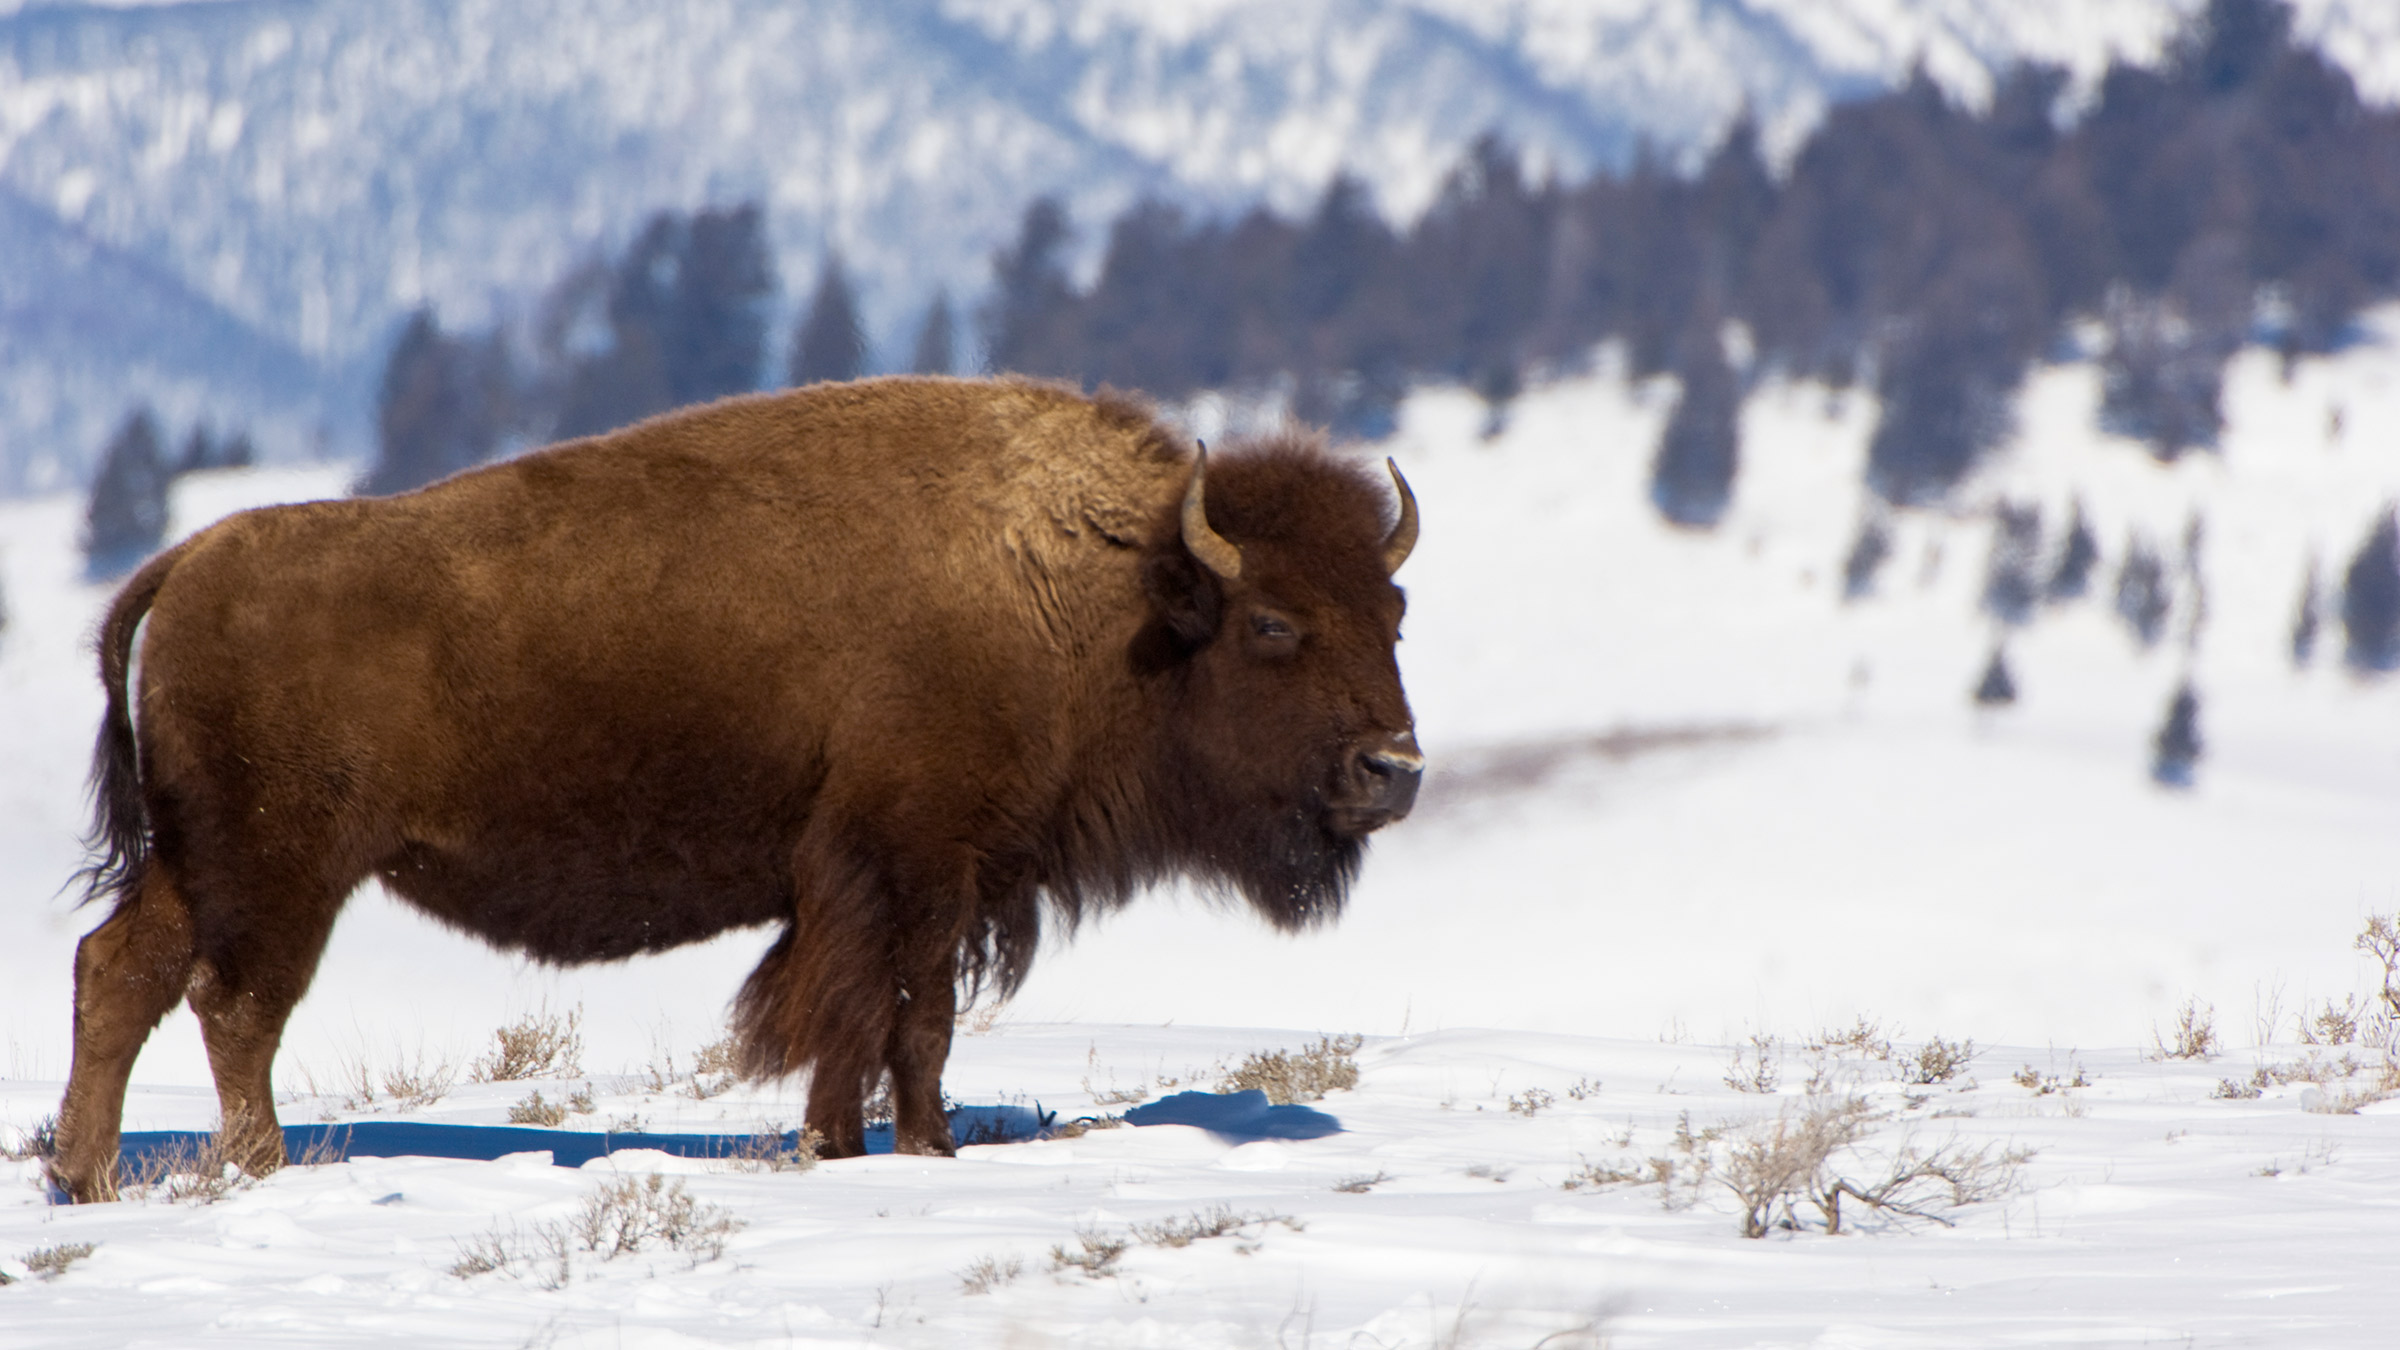 Buffalo standing in a snowy mountain range